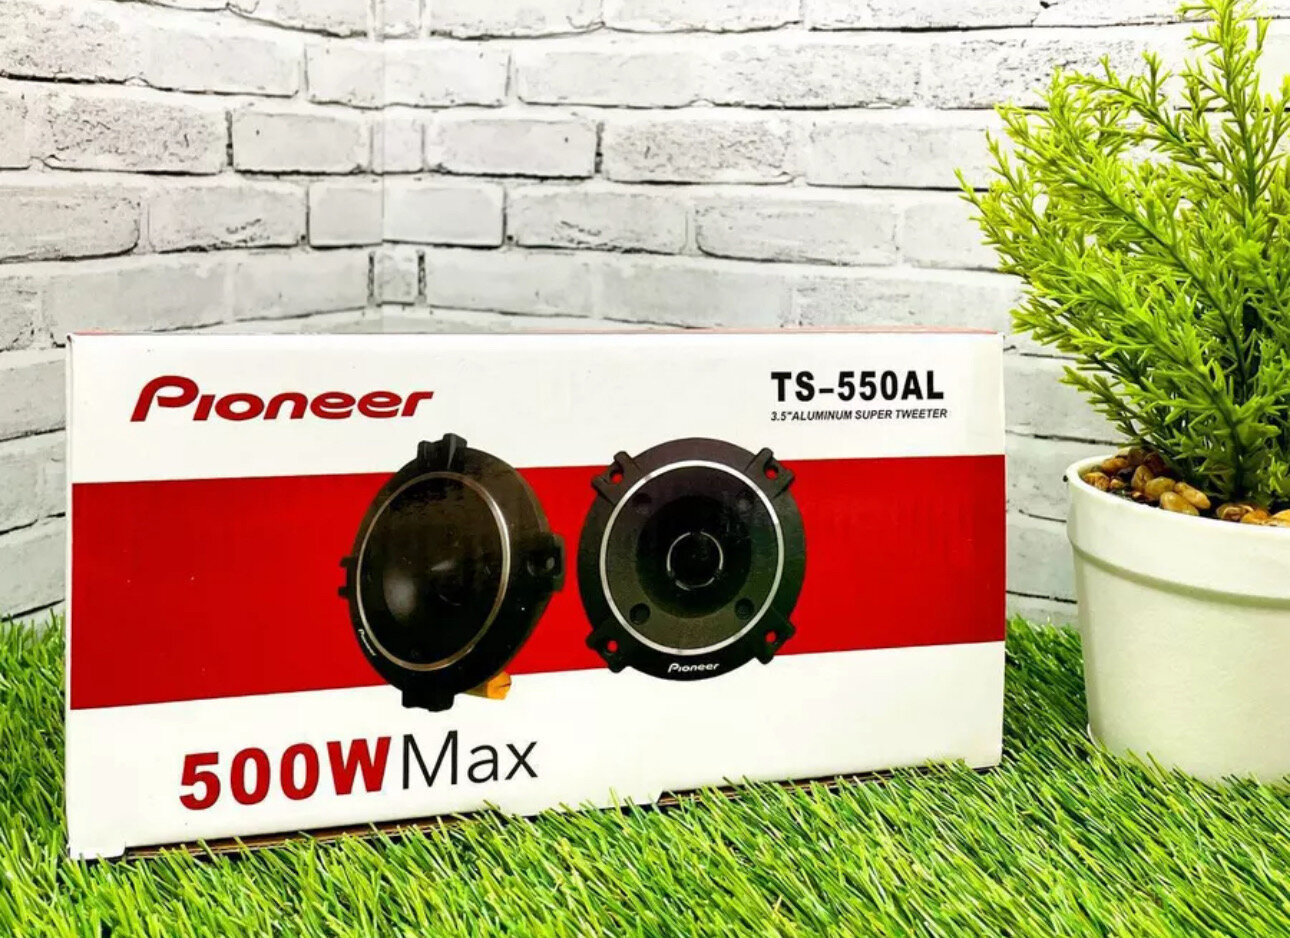 Рупора автомобильные твитеры со встроенным фильтром "Pioneer TS-550AL" Комплект из 2 штук Высокочастотные динамики пищалки 98x98 мм 50 Вт.